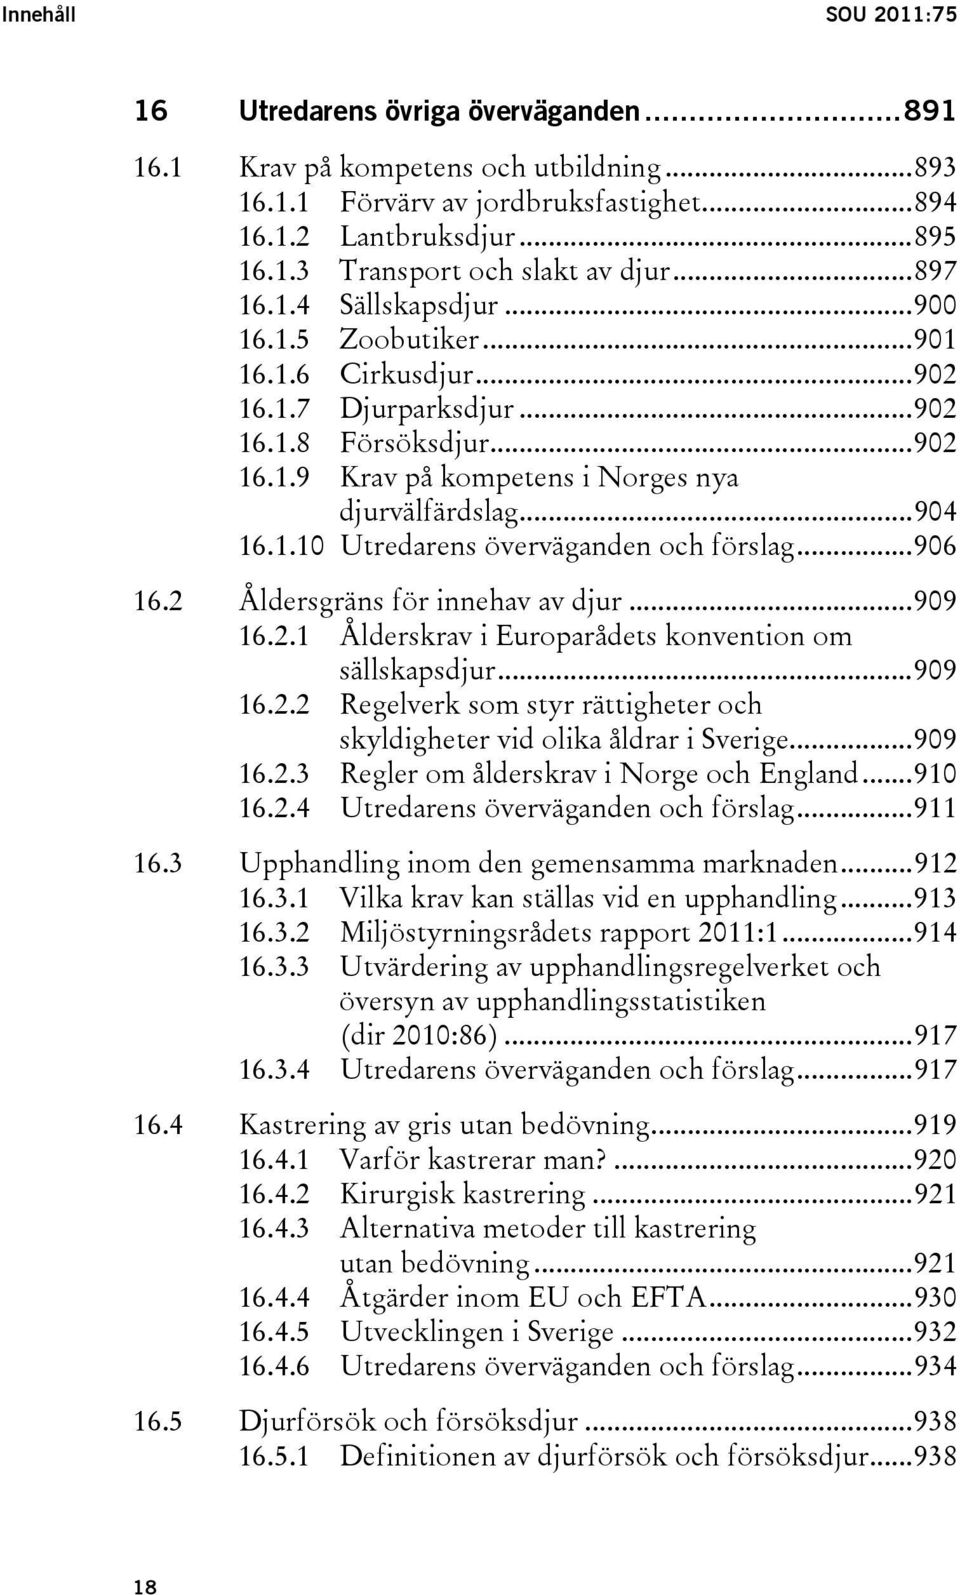 ..906 16.2 Åldersgräns för innehav av djur...909 16.2.1 Ålderskrav i Europarådets konvention om sällskapsdjur...909 16.2.2 Regelverk som styr rättigheter och skyldigheter vid olika åldrar i Sverige.